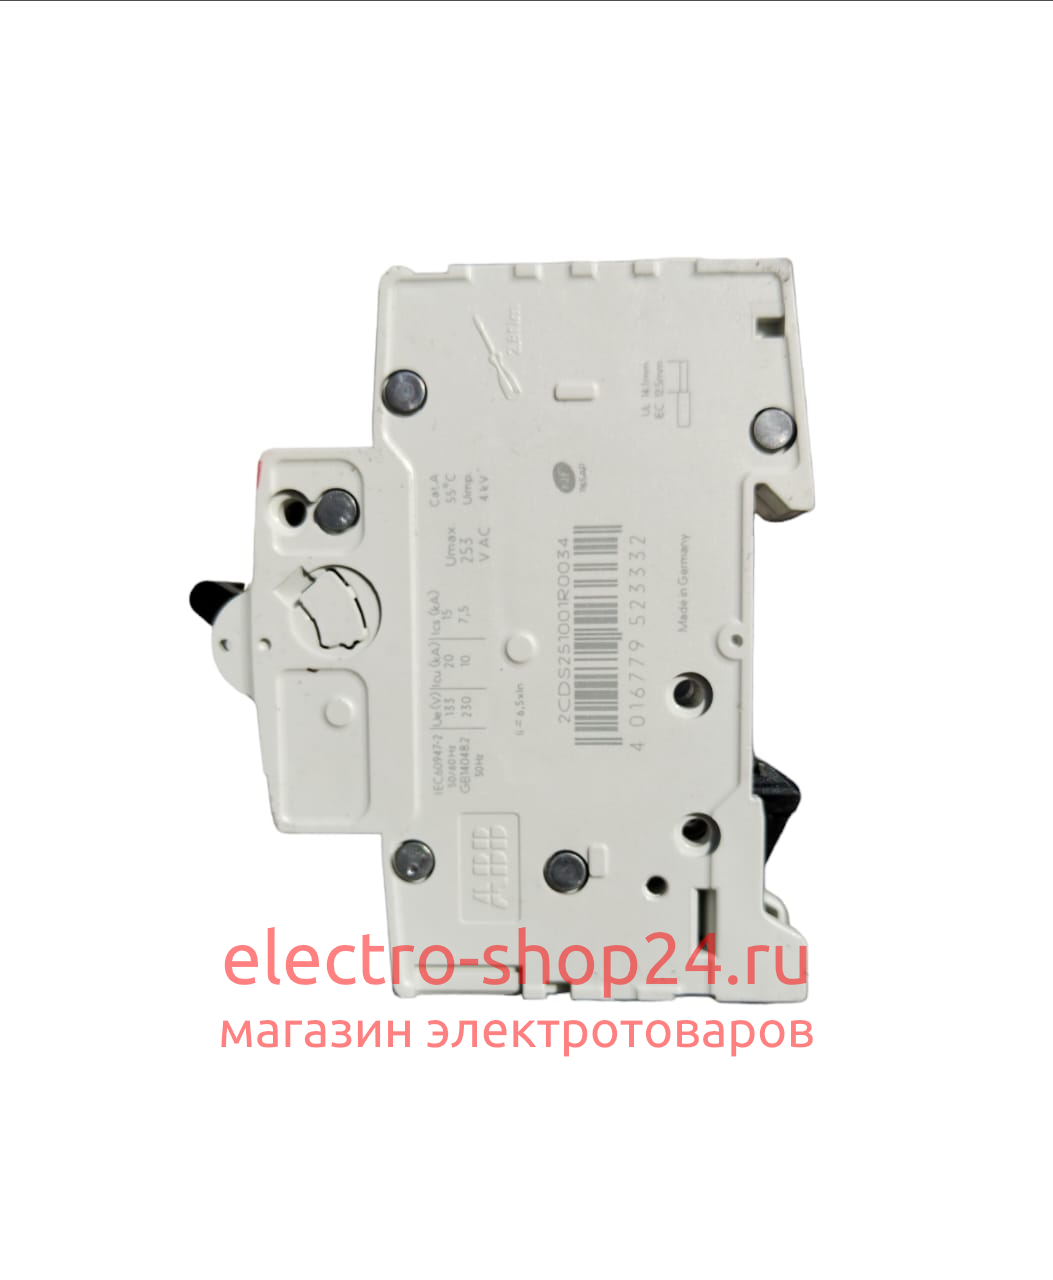 S201 C3 Автоматический выключатель 1-полюсный 3А 6кА (хар-ка C) ABB 2CDS251001R0034 2CDS251001R0034 - магазин электротехники Electroshop